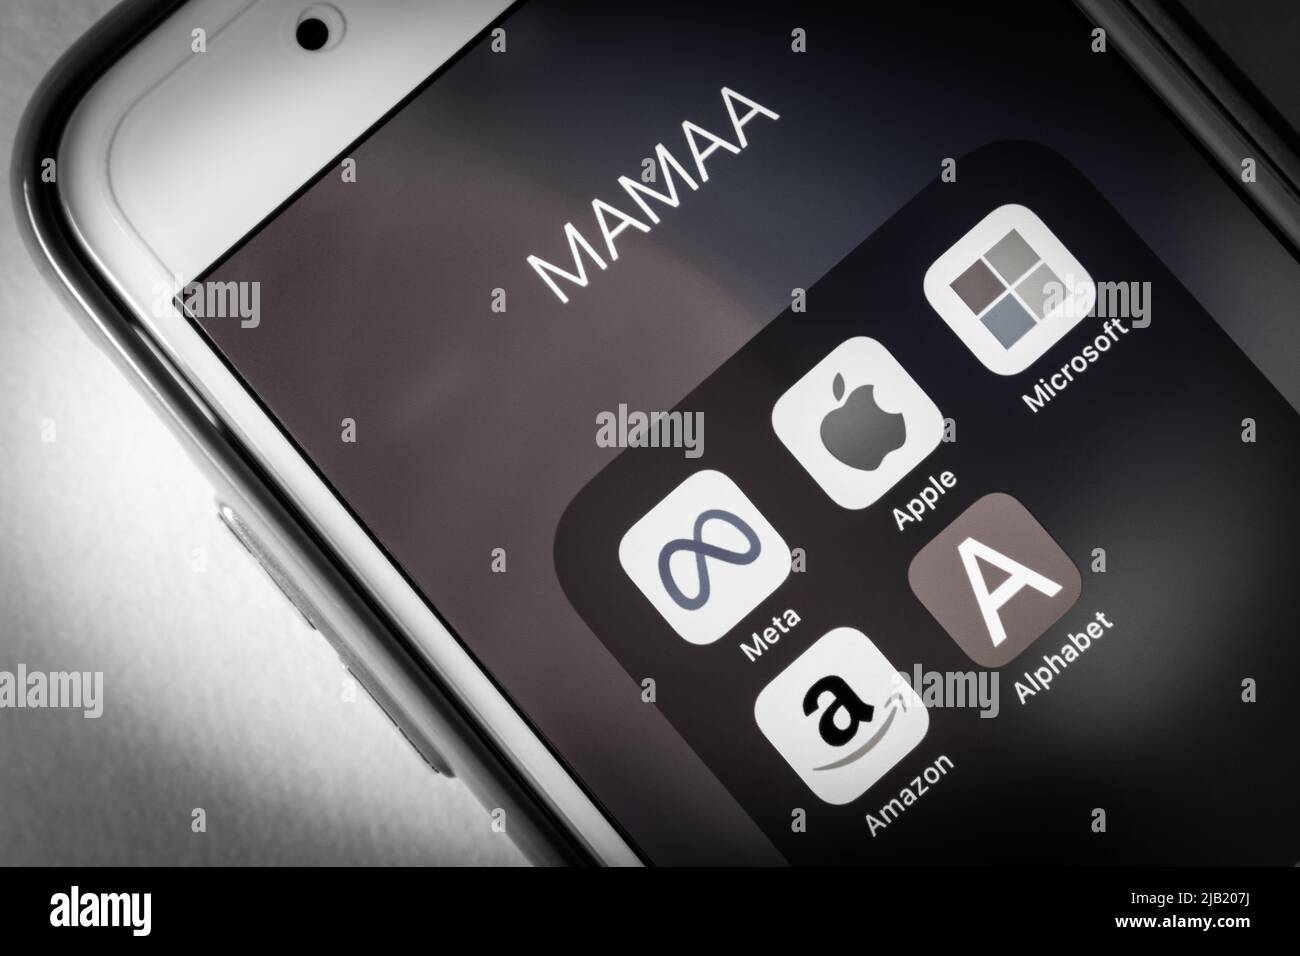 Icone di MAMAA, sta per Meta, Apple, Microsoft, Amazon, E Alphabet inc., 5 giganti tecnologici statunitensi nel settore IT, su iPhone in bianco e nero Foto Stock